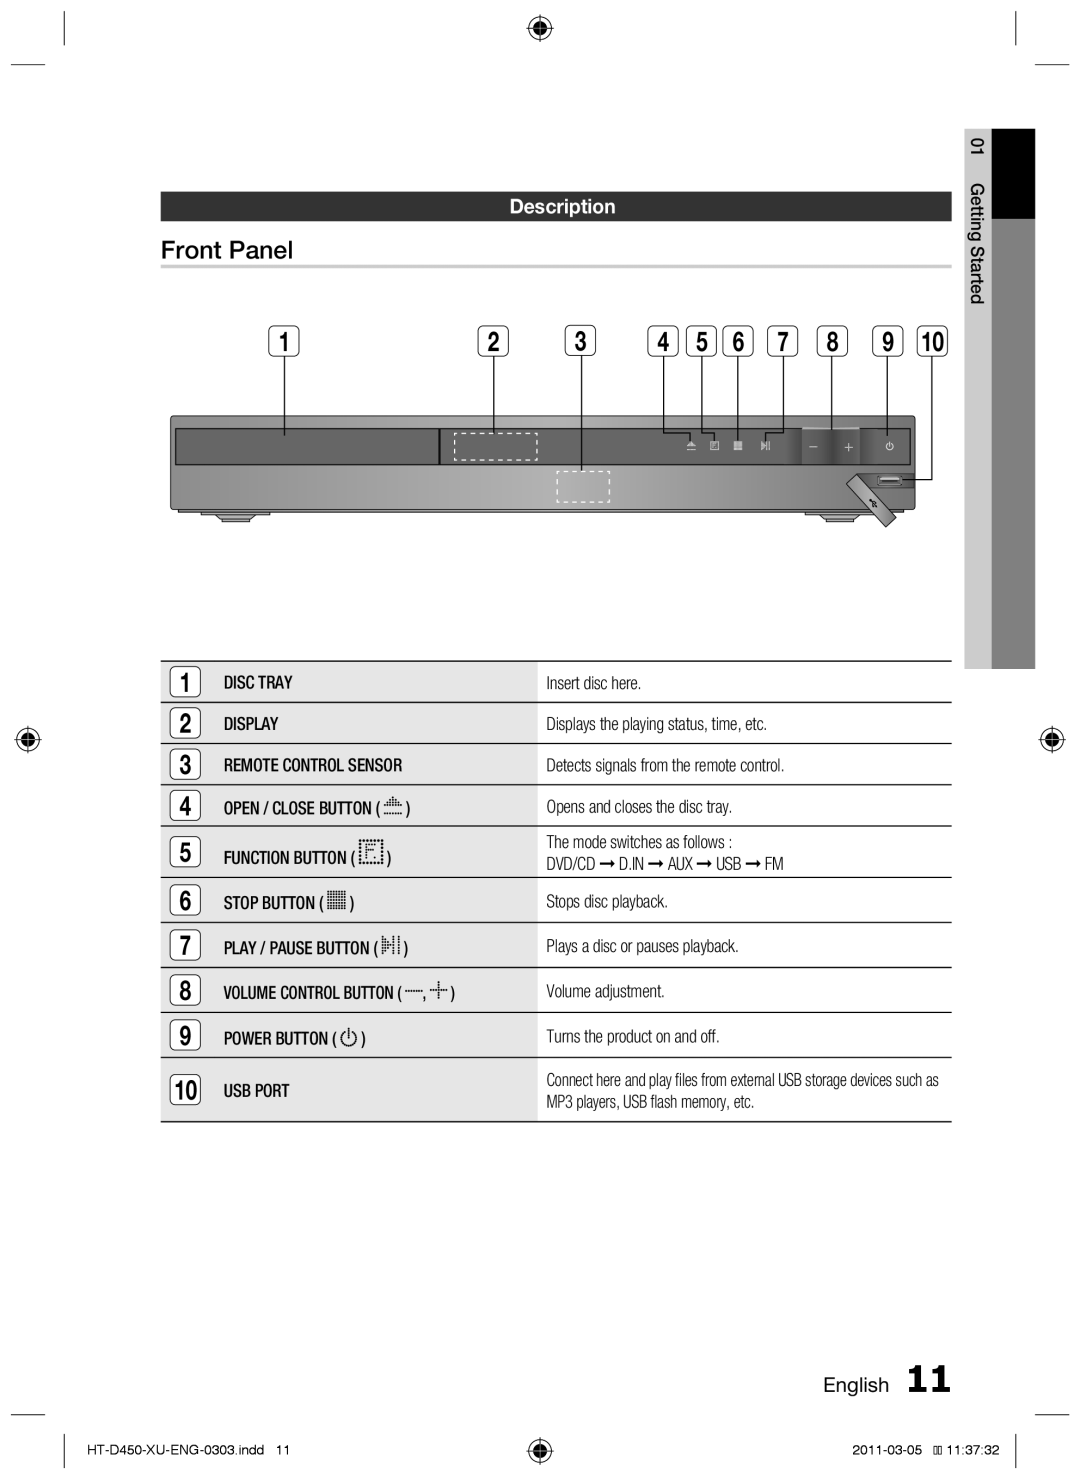 Samsung HT-D453, HT-D450, HT-D455 user manual Front Panel, Description, English 